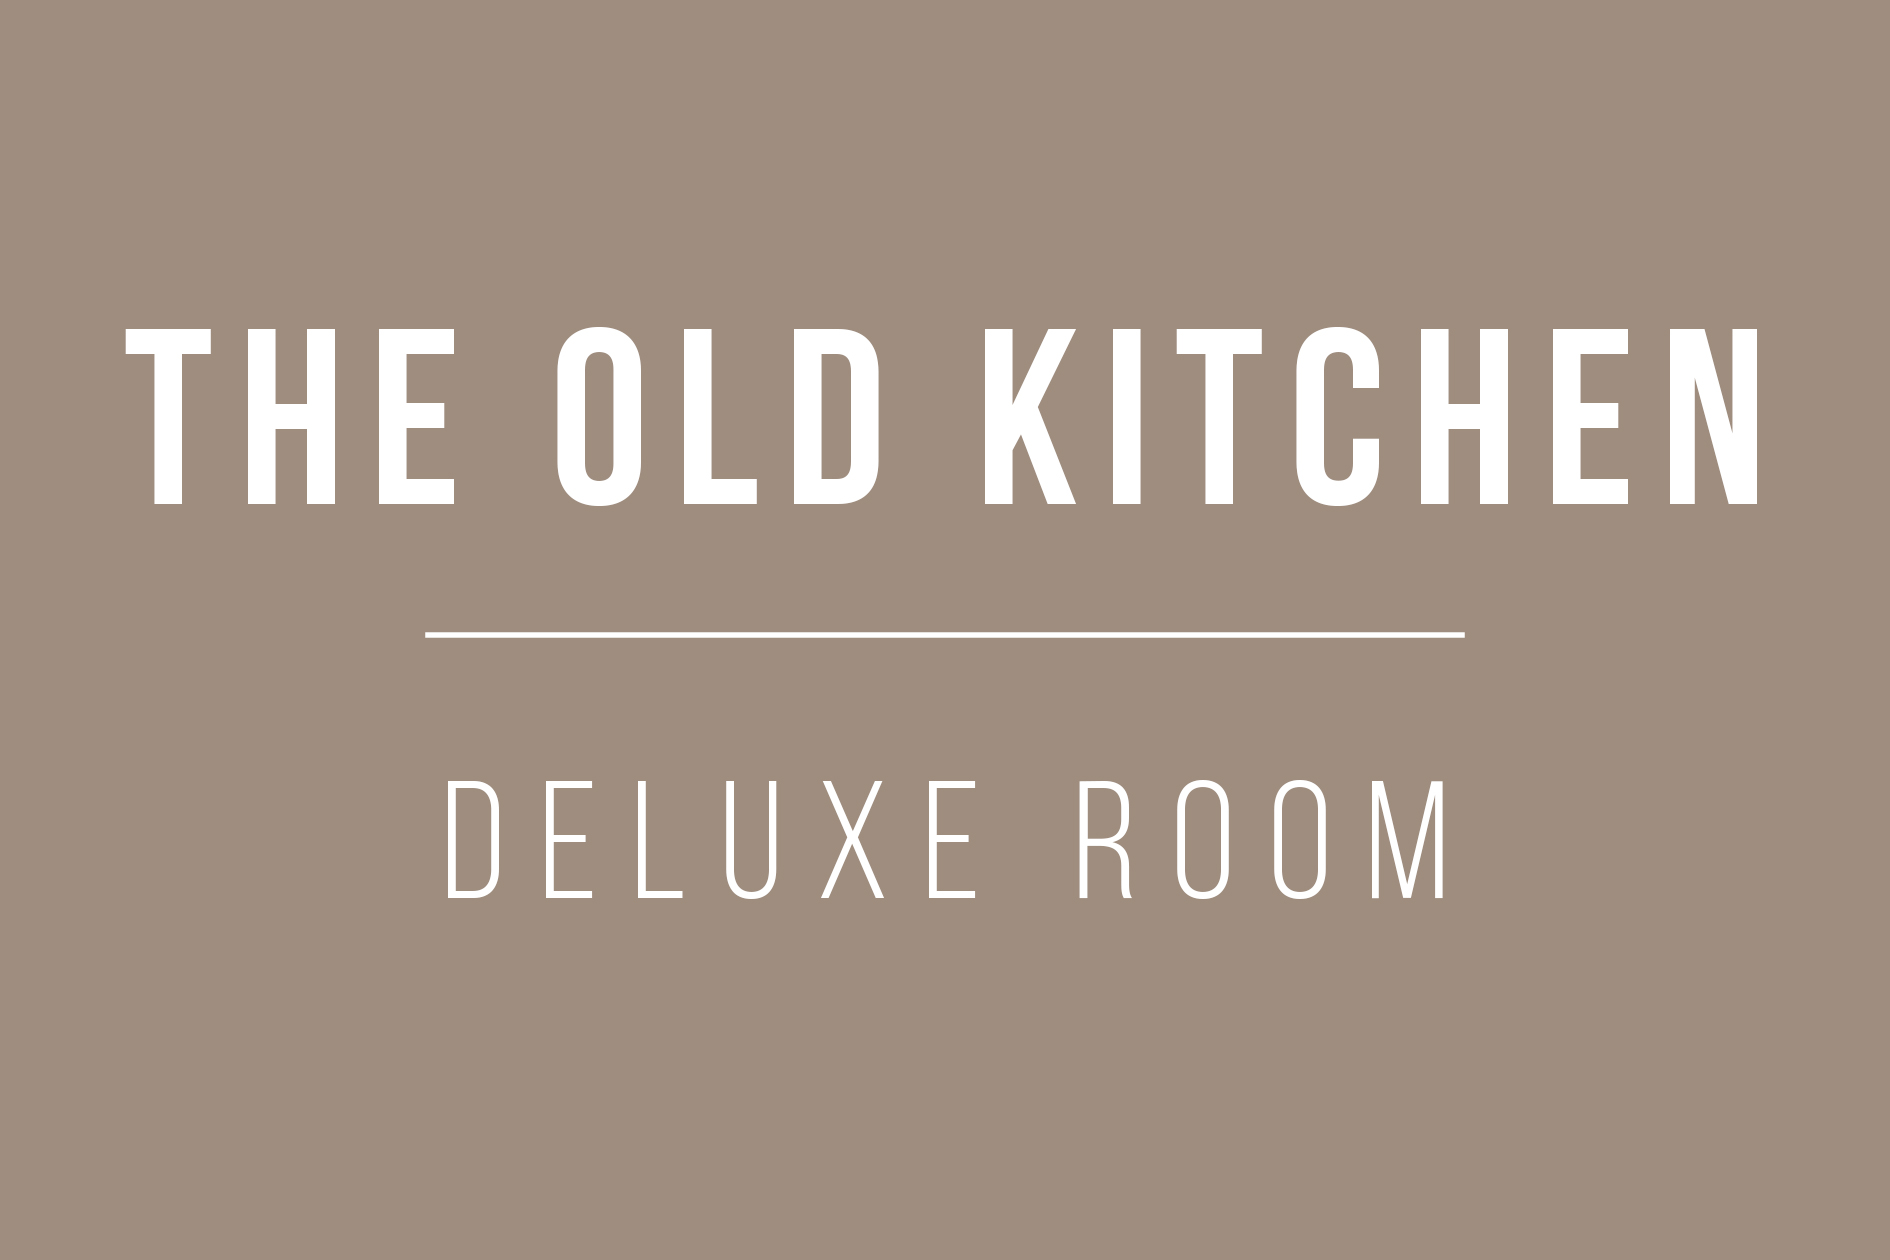 aya-kapadokya-old-kitchen-deluxe-room-text-0001